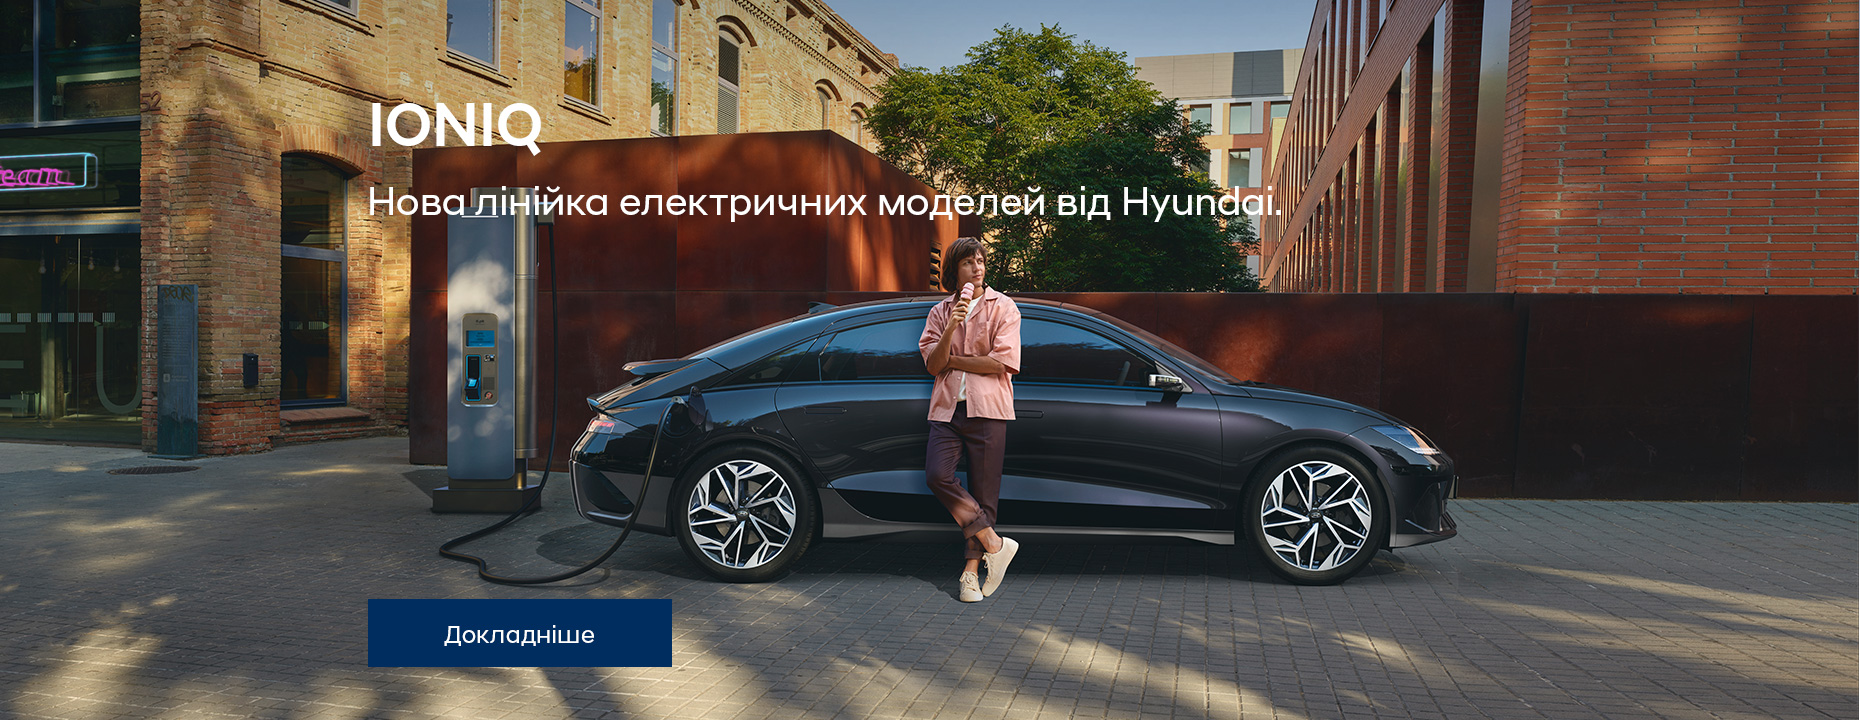 Автомобілі Hyundai м. Одеса | Купити новий Хюндай | Автотрейдінг Одеса ДП - фото 32